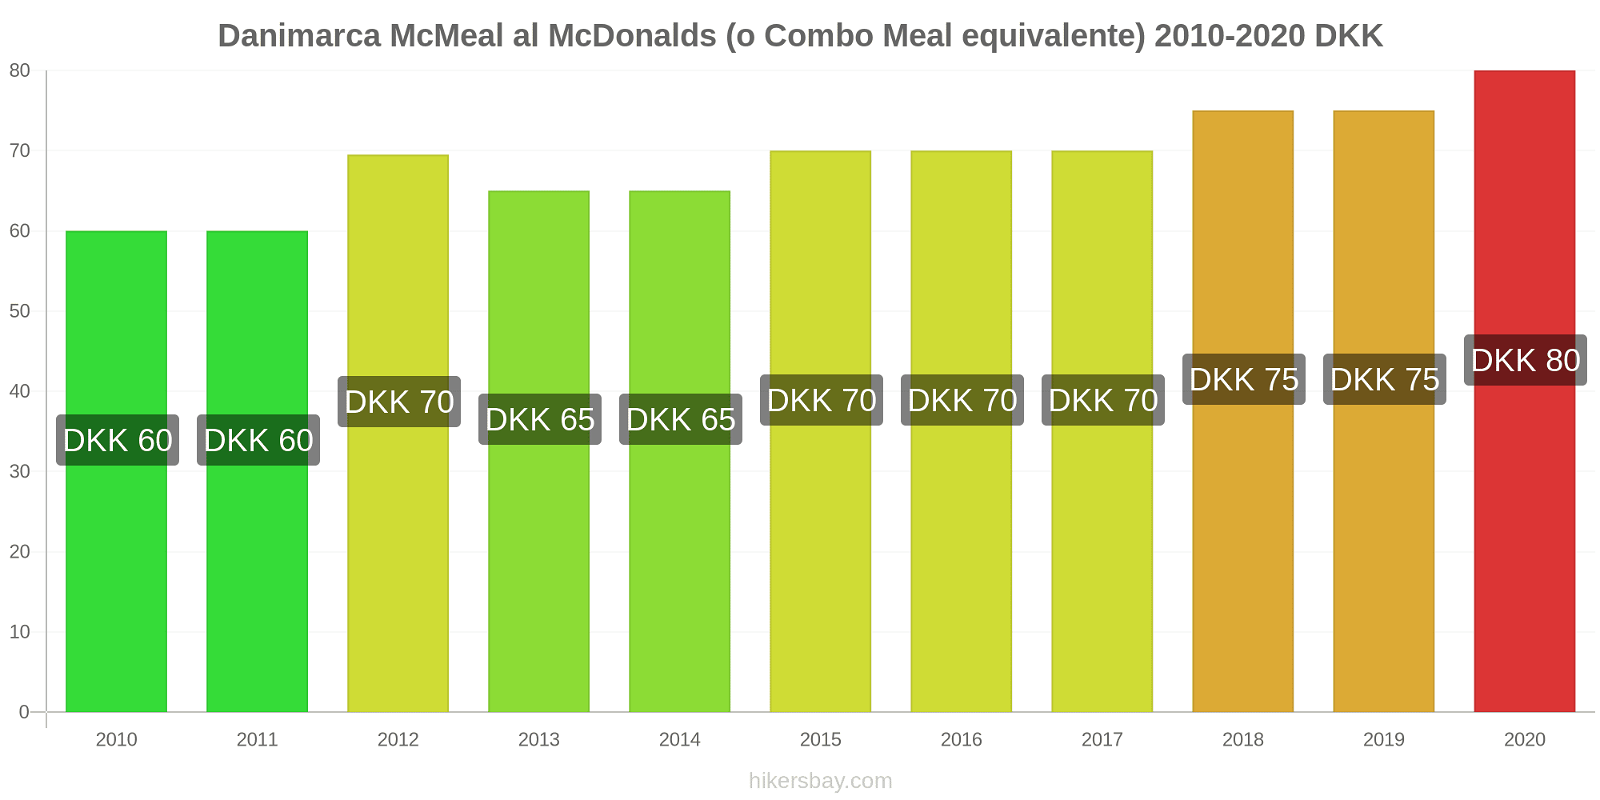 Danimarca variazioni di prezzo McMeal al McDonalds (o in un equivalente fastfood) hikersbay.com